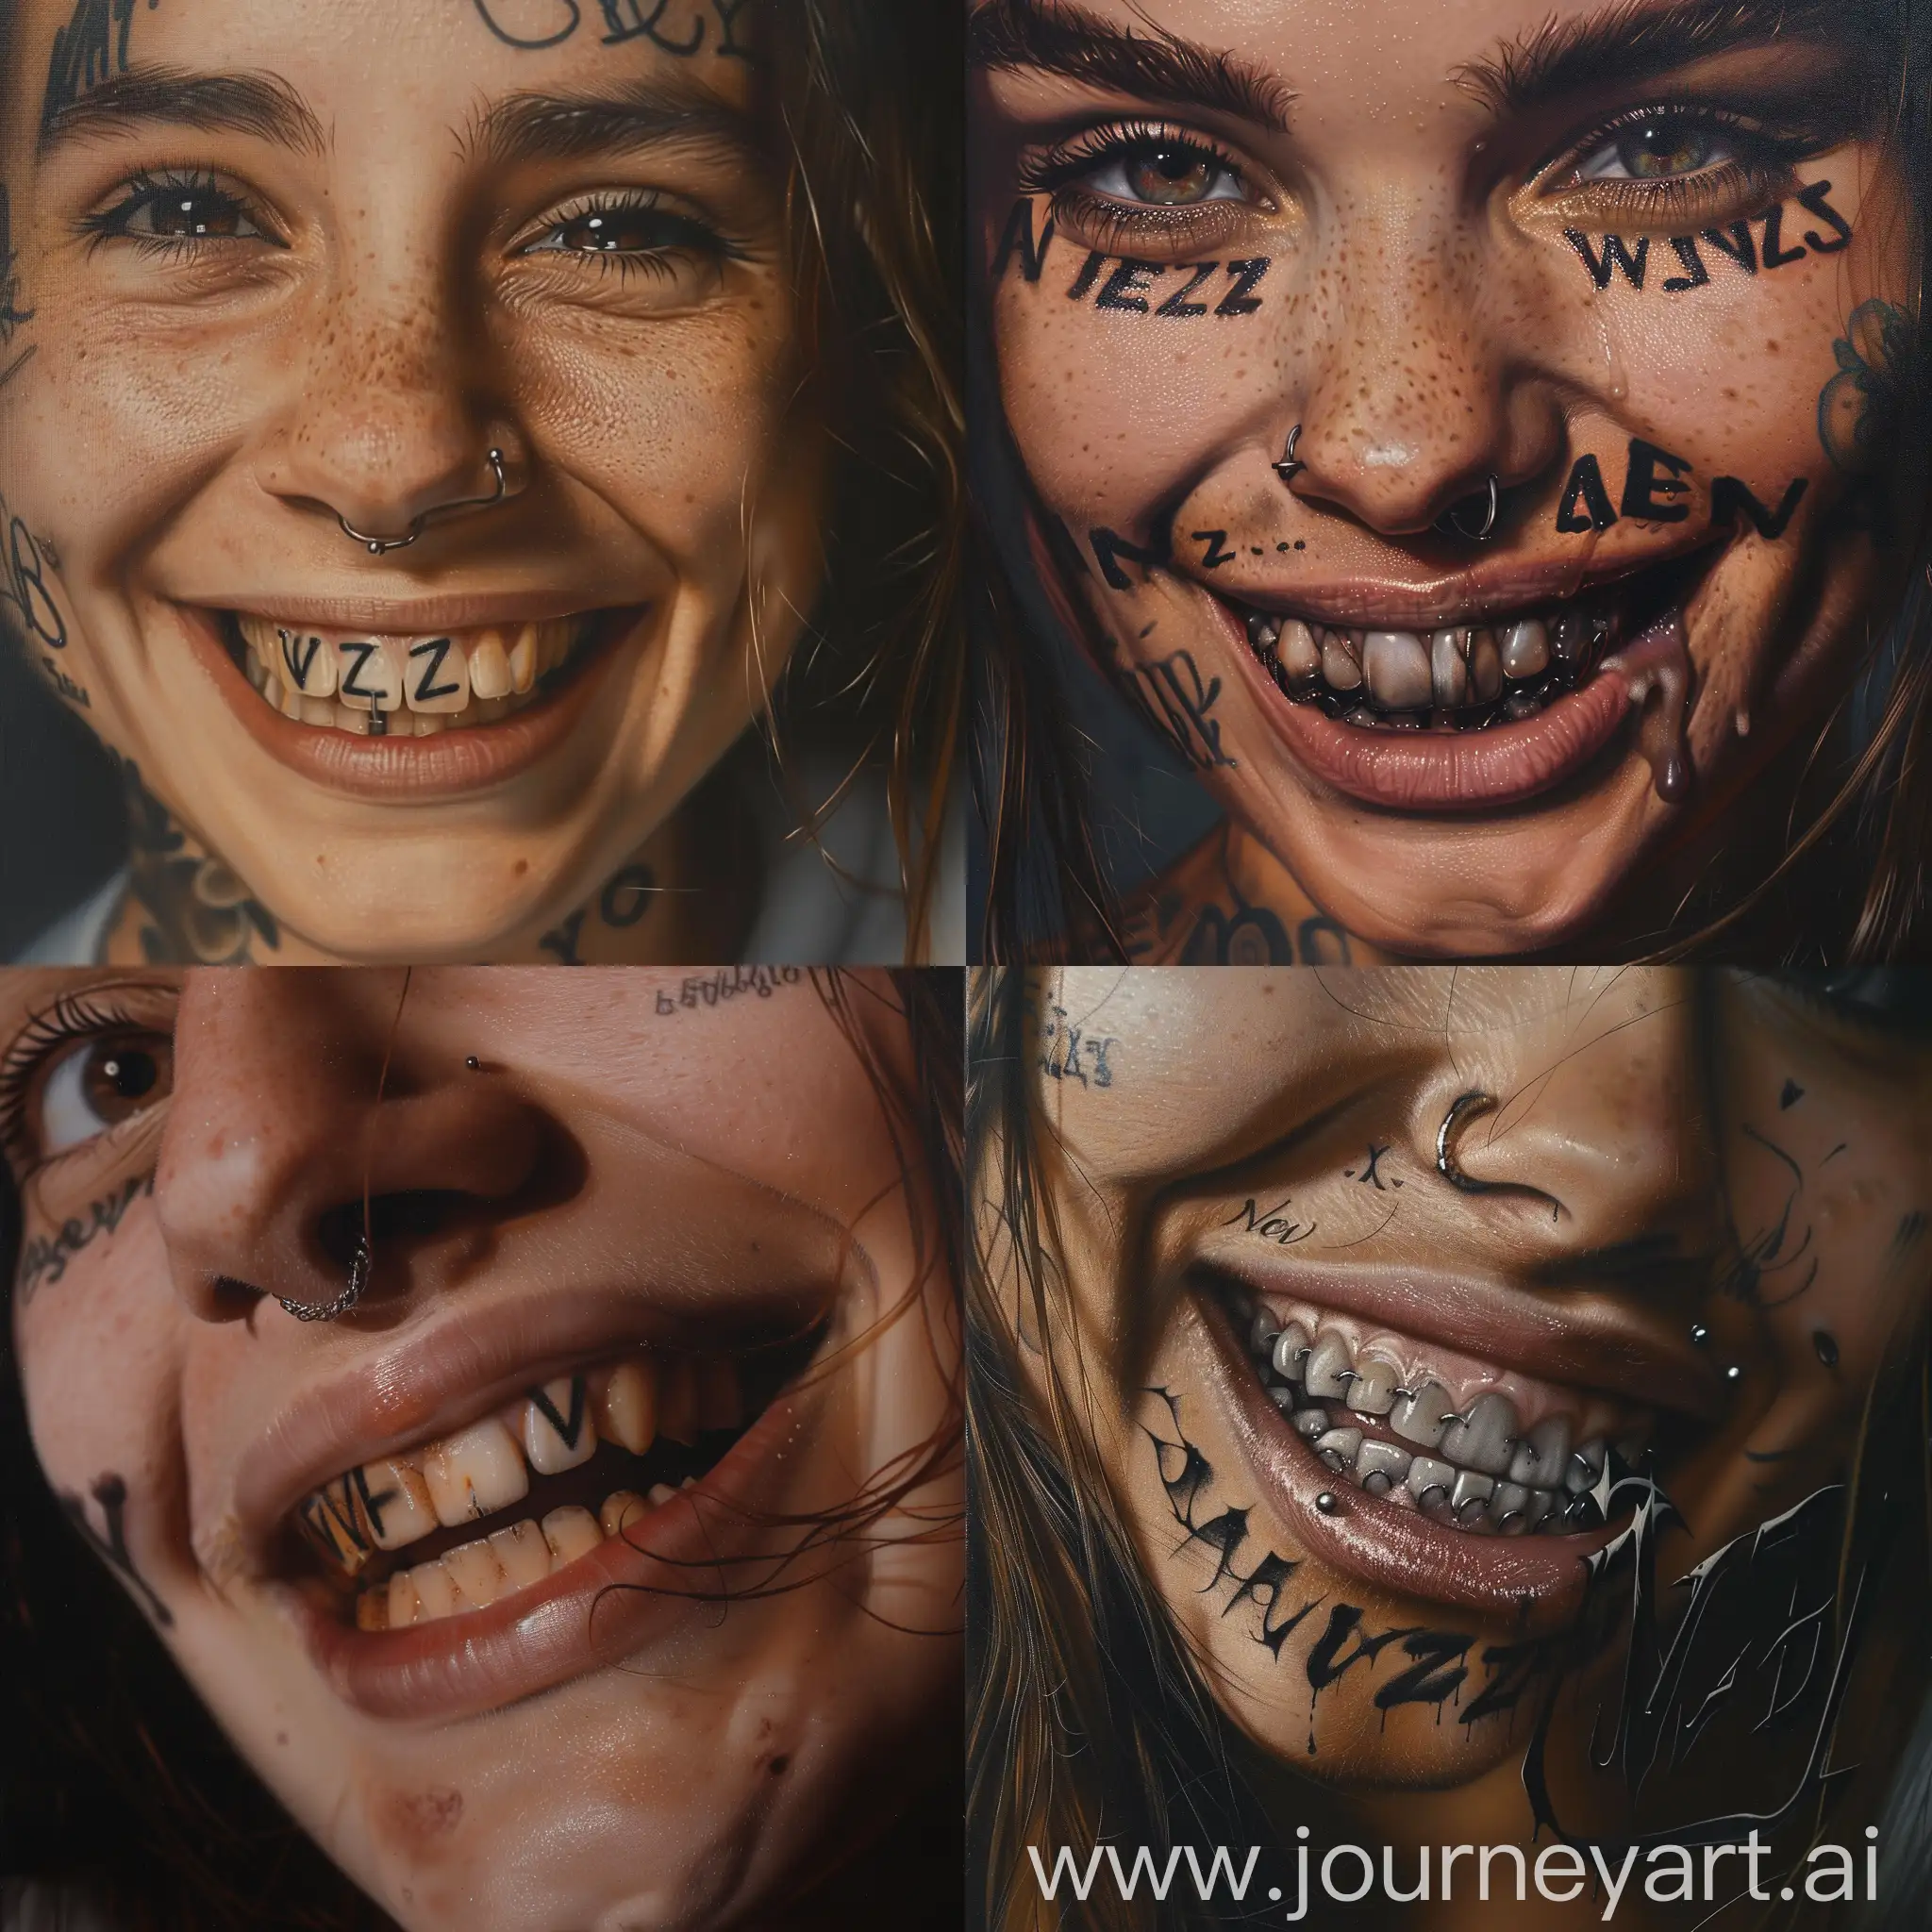 Девушка с татуировкой на лице улыбается, на верхних зубах черные буквы в следующем порядке "NevZ". Фото крупным планом. Фотореализм